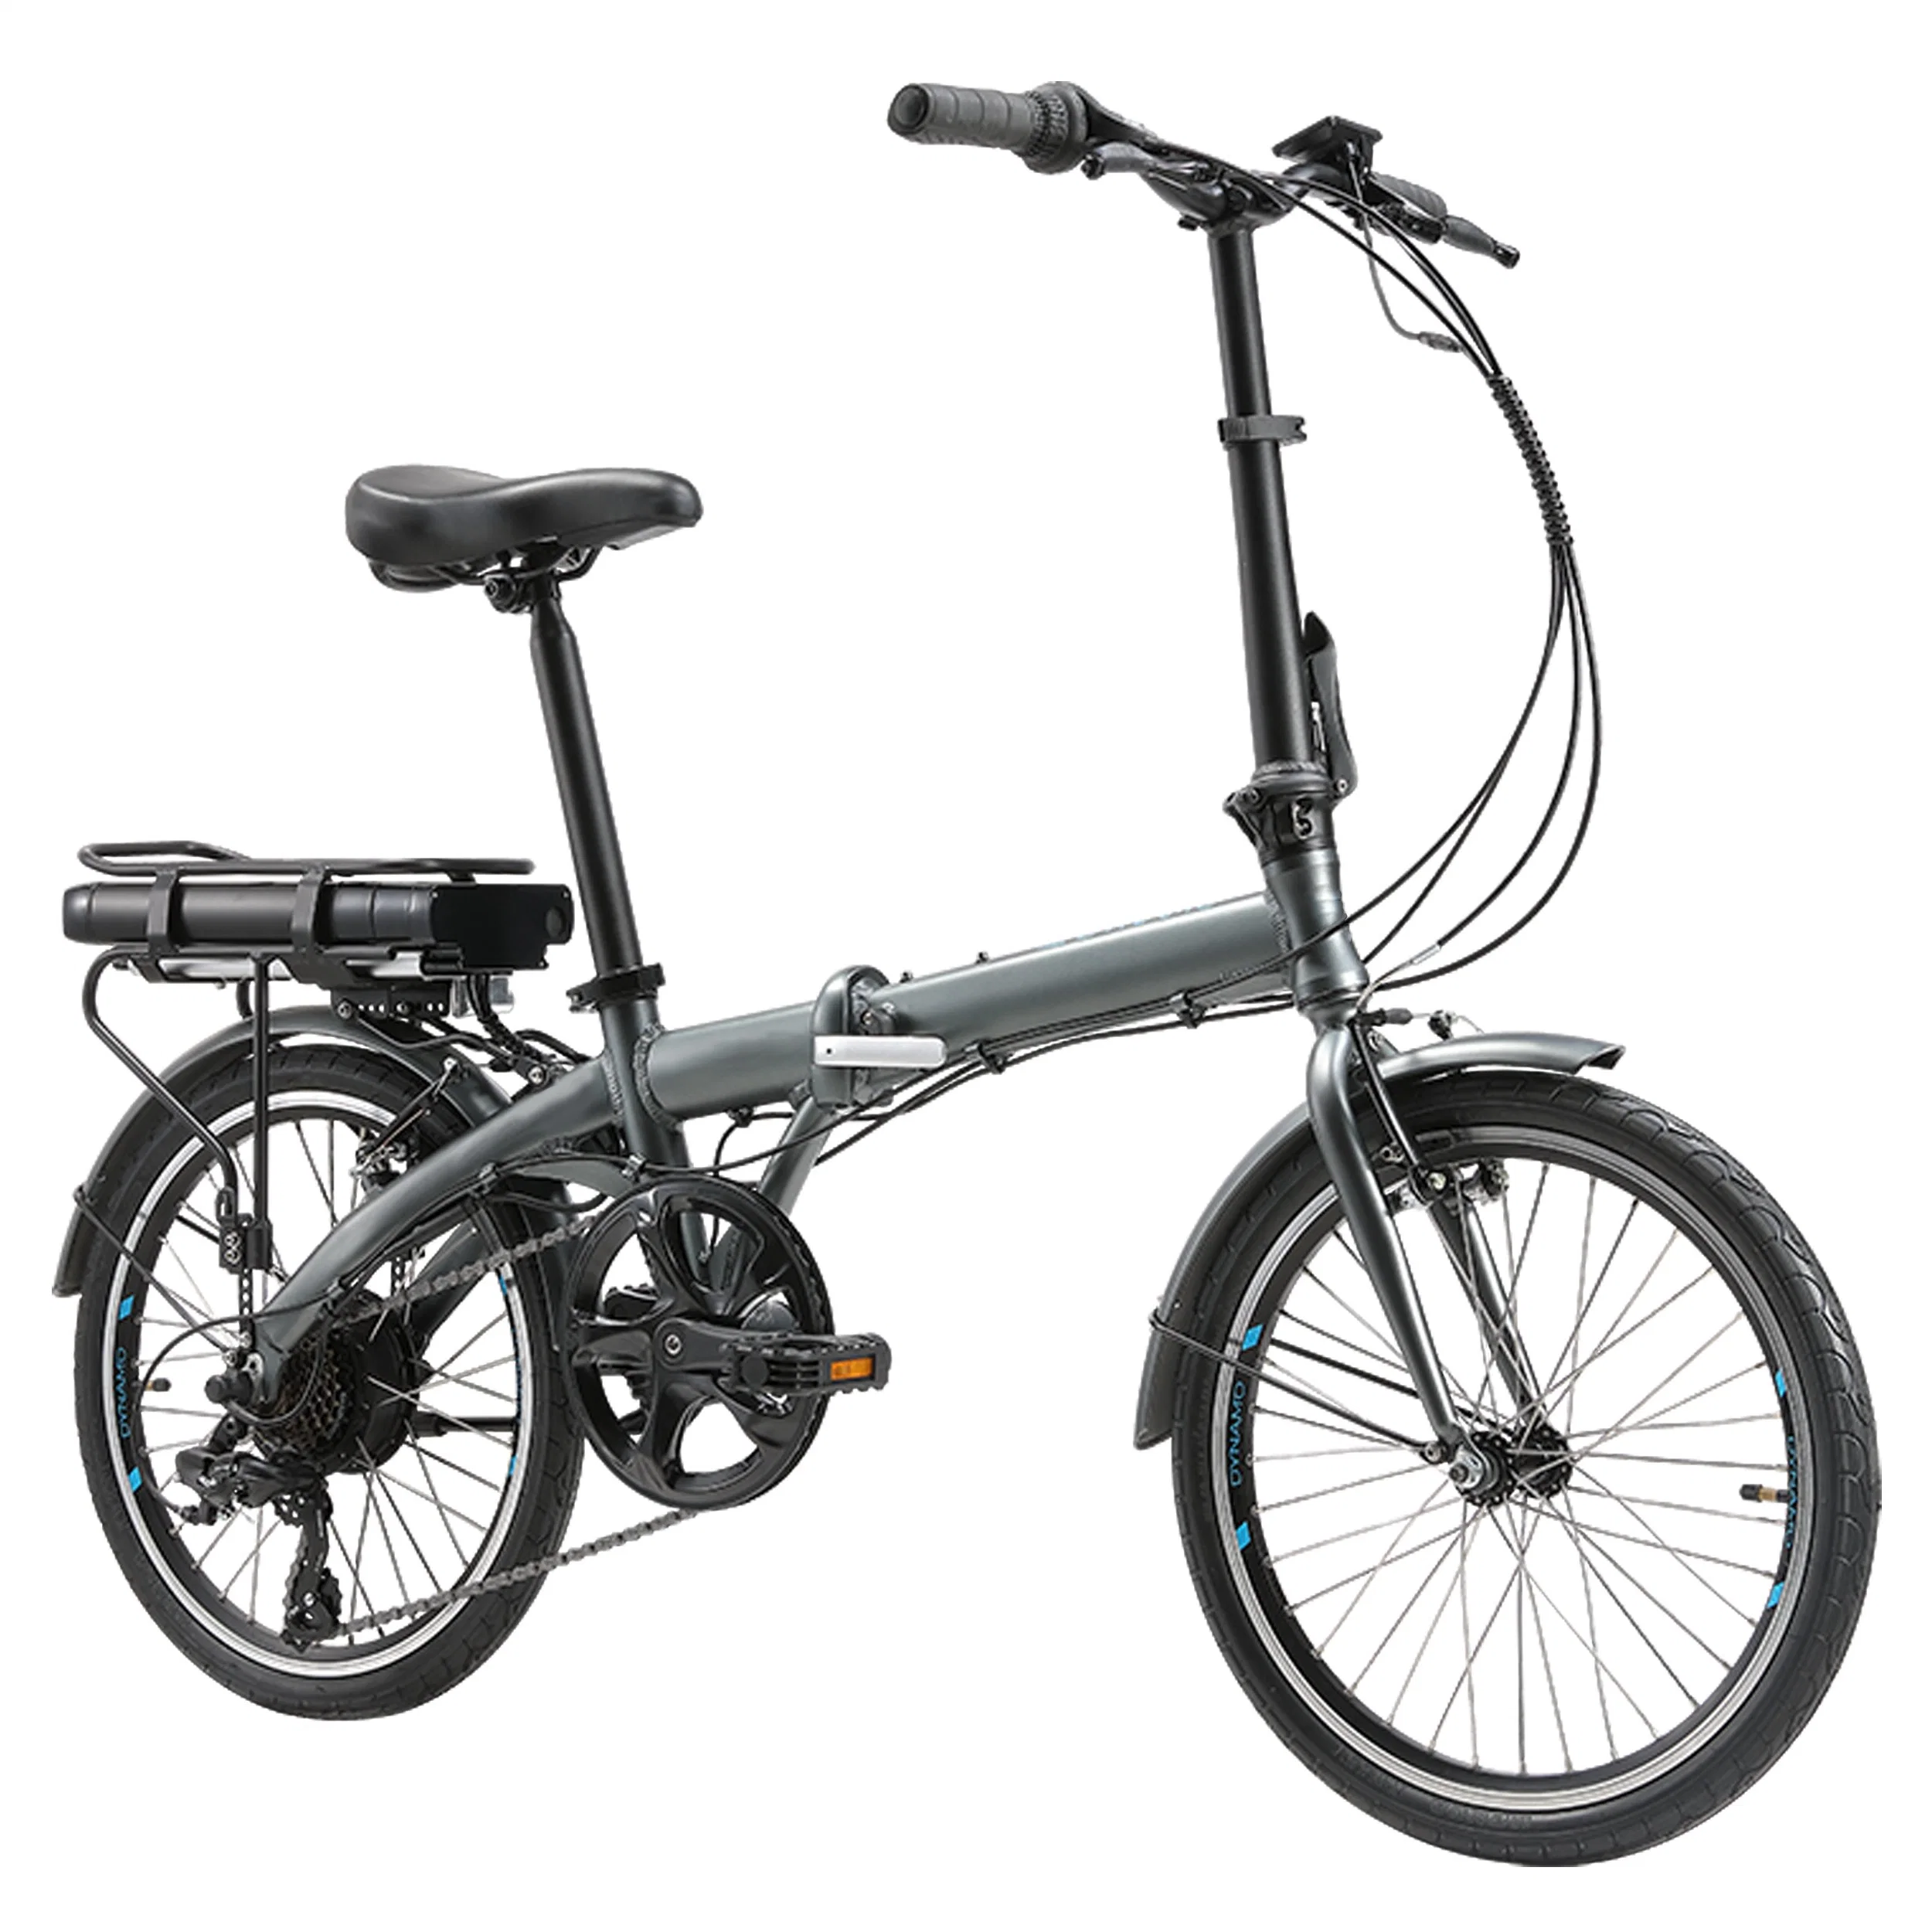 E Scooter Bicycle Folding Adult Electric Scooter

Trottinette électrique pliable pour adulte